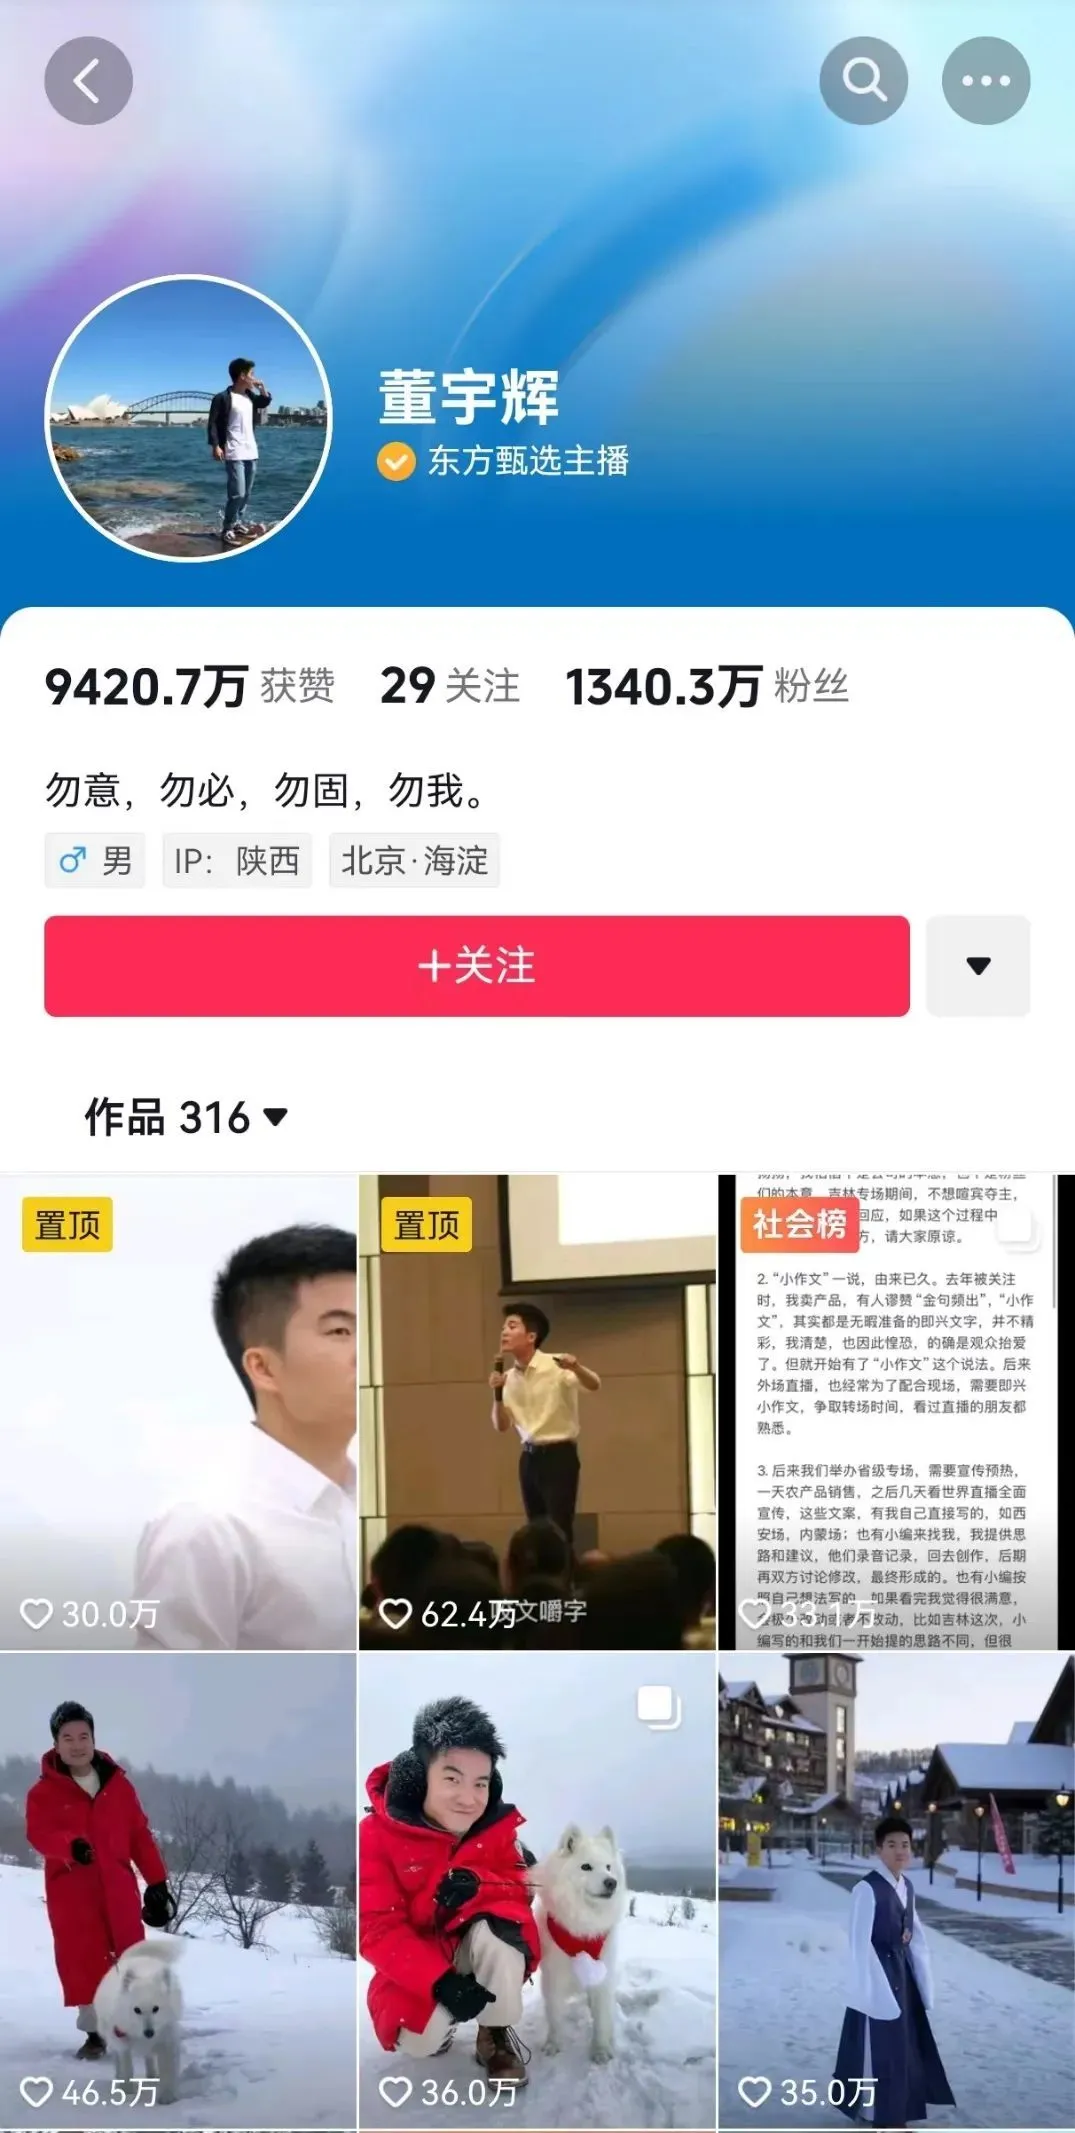 董宇辉首次回应离职传闻_老虎社区_美港股上老虎 - 老虎社区